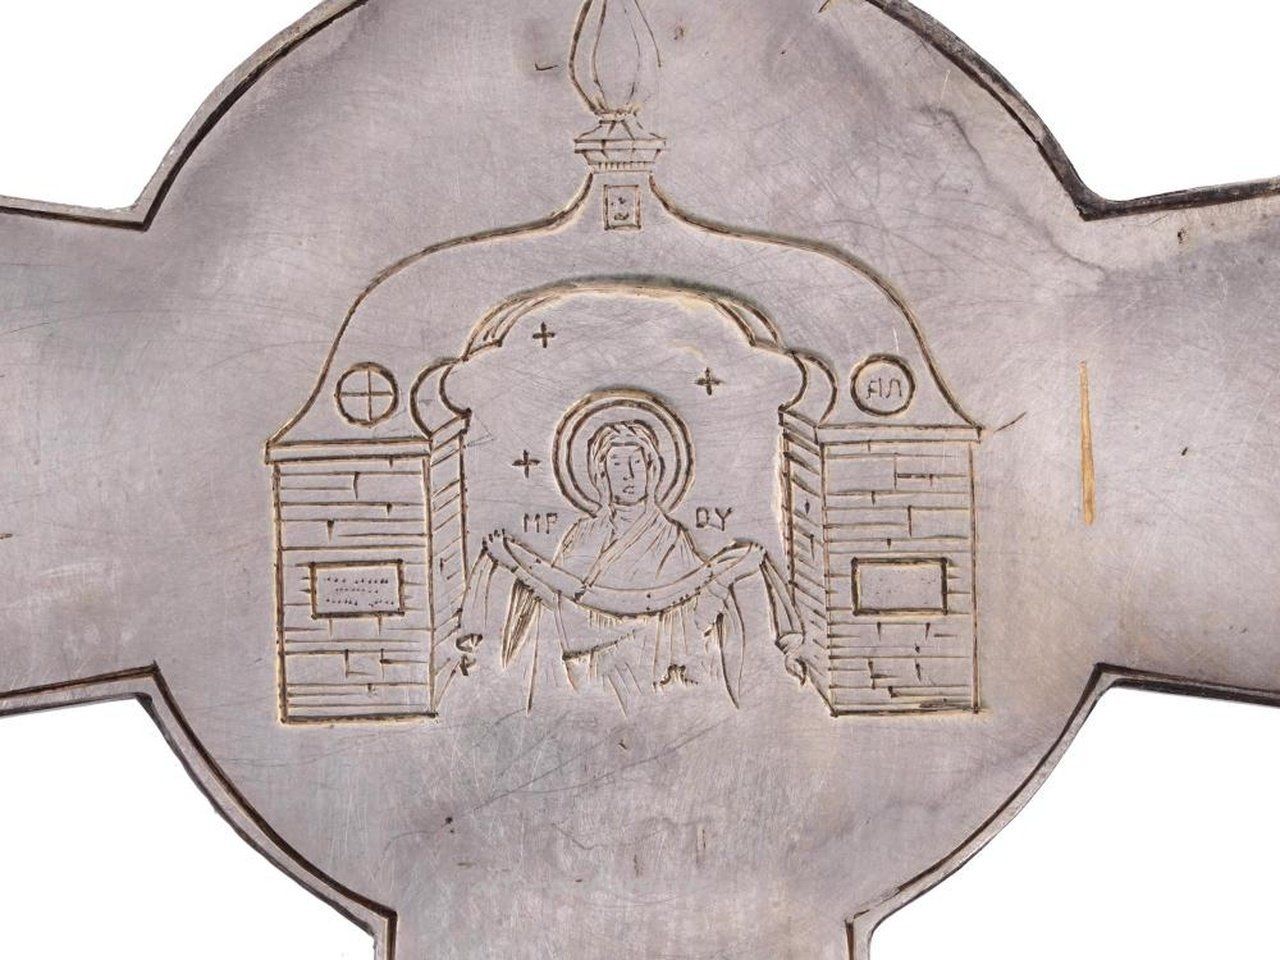 Русское серебро , Русская православная подвеска-крест из позолоченного серебра